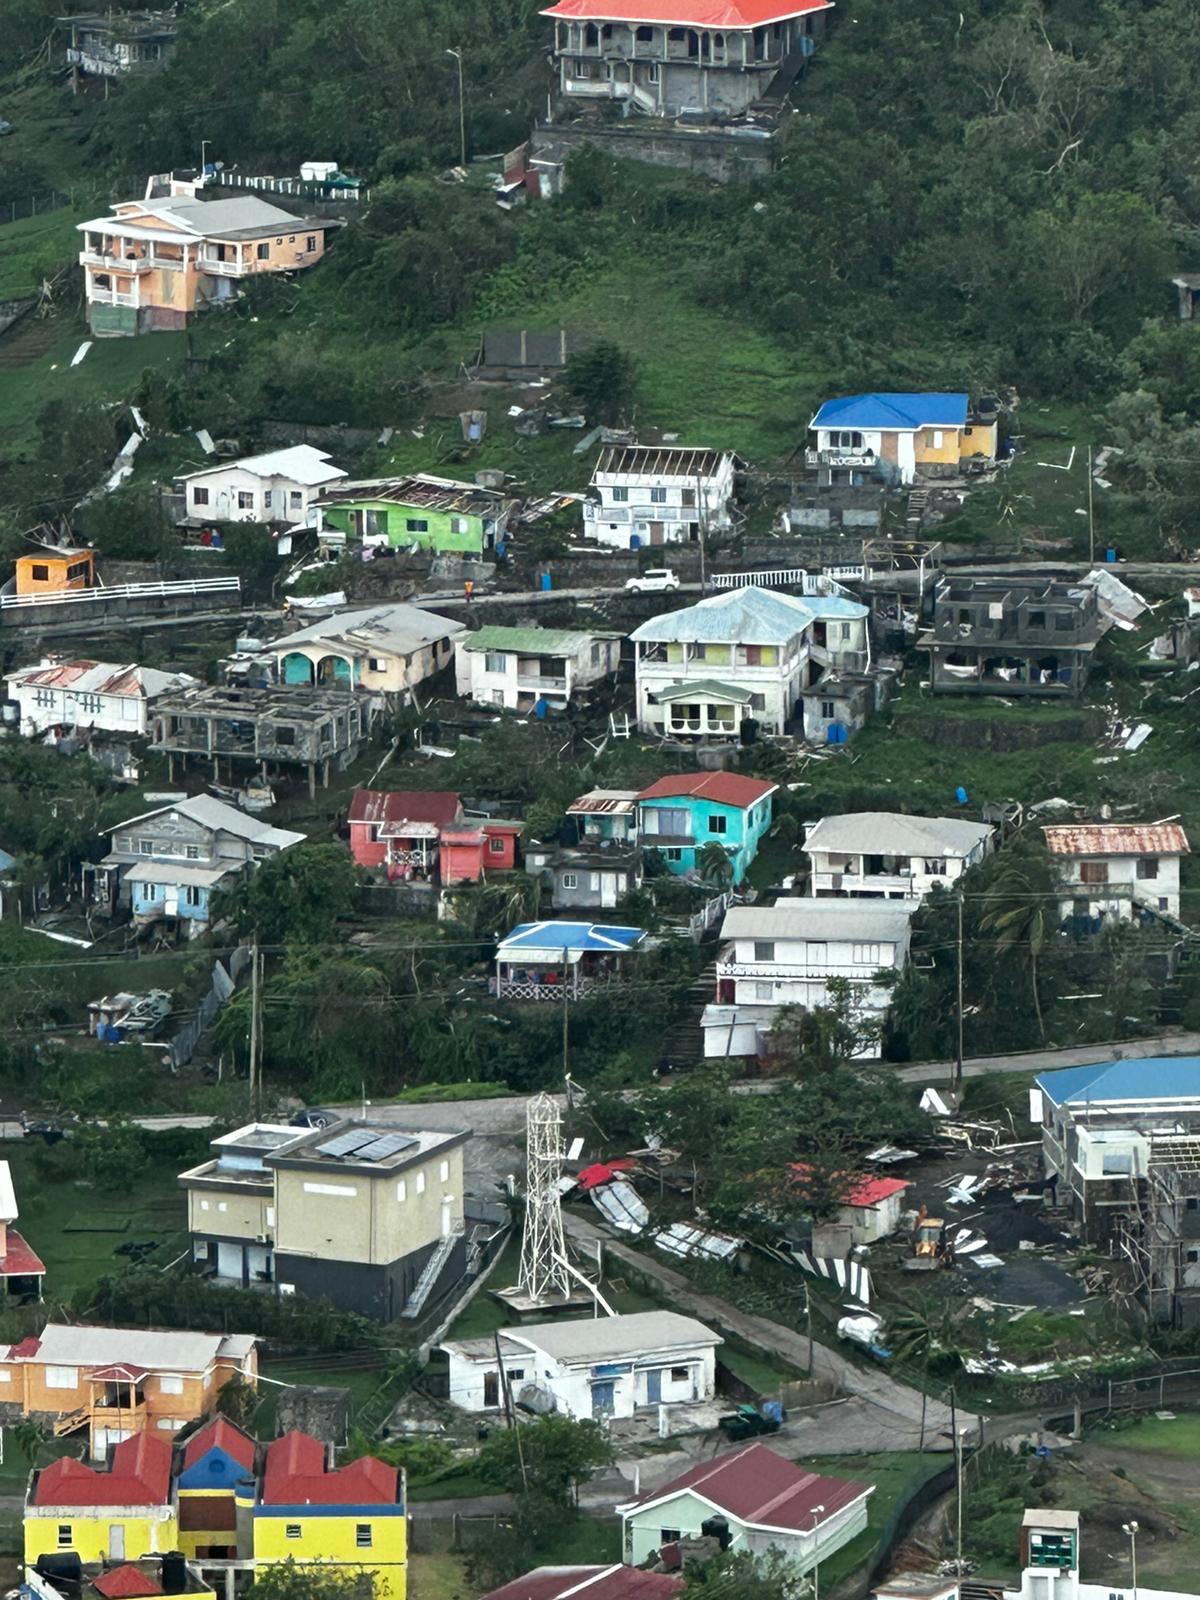 Huragan Beryl zniszczył setki budynków i zabił sześć osób, gdy przetoczył się przez wschodnie Karaiby, w tym wyspę Bequia, na zdjęciu